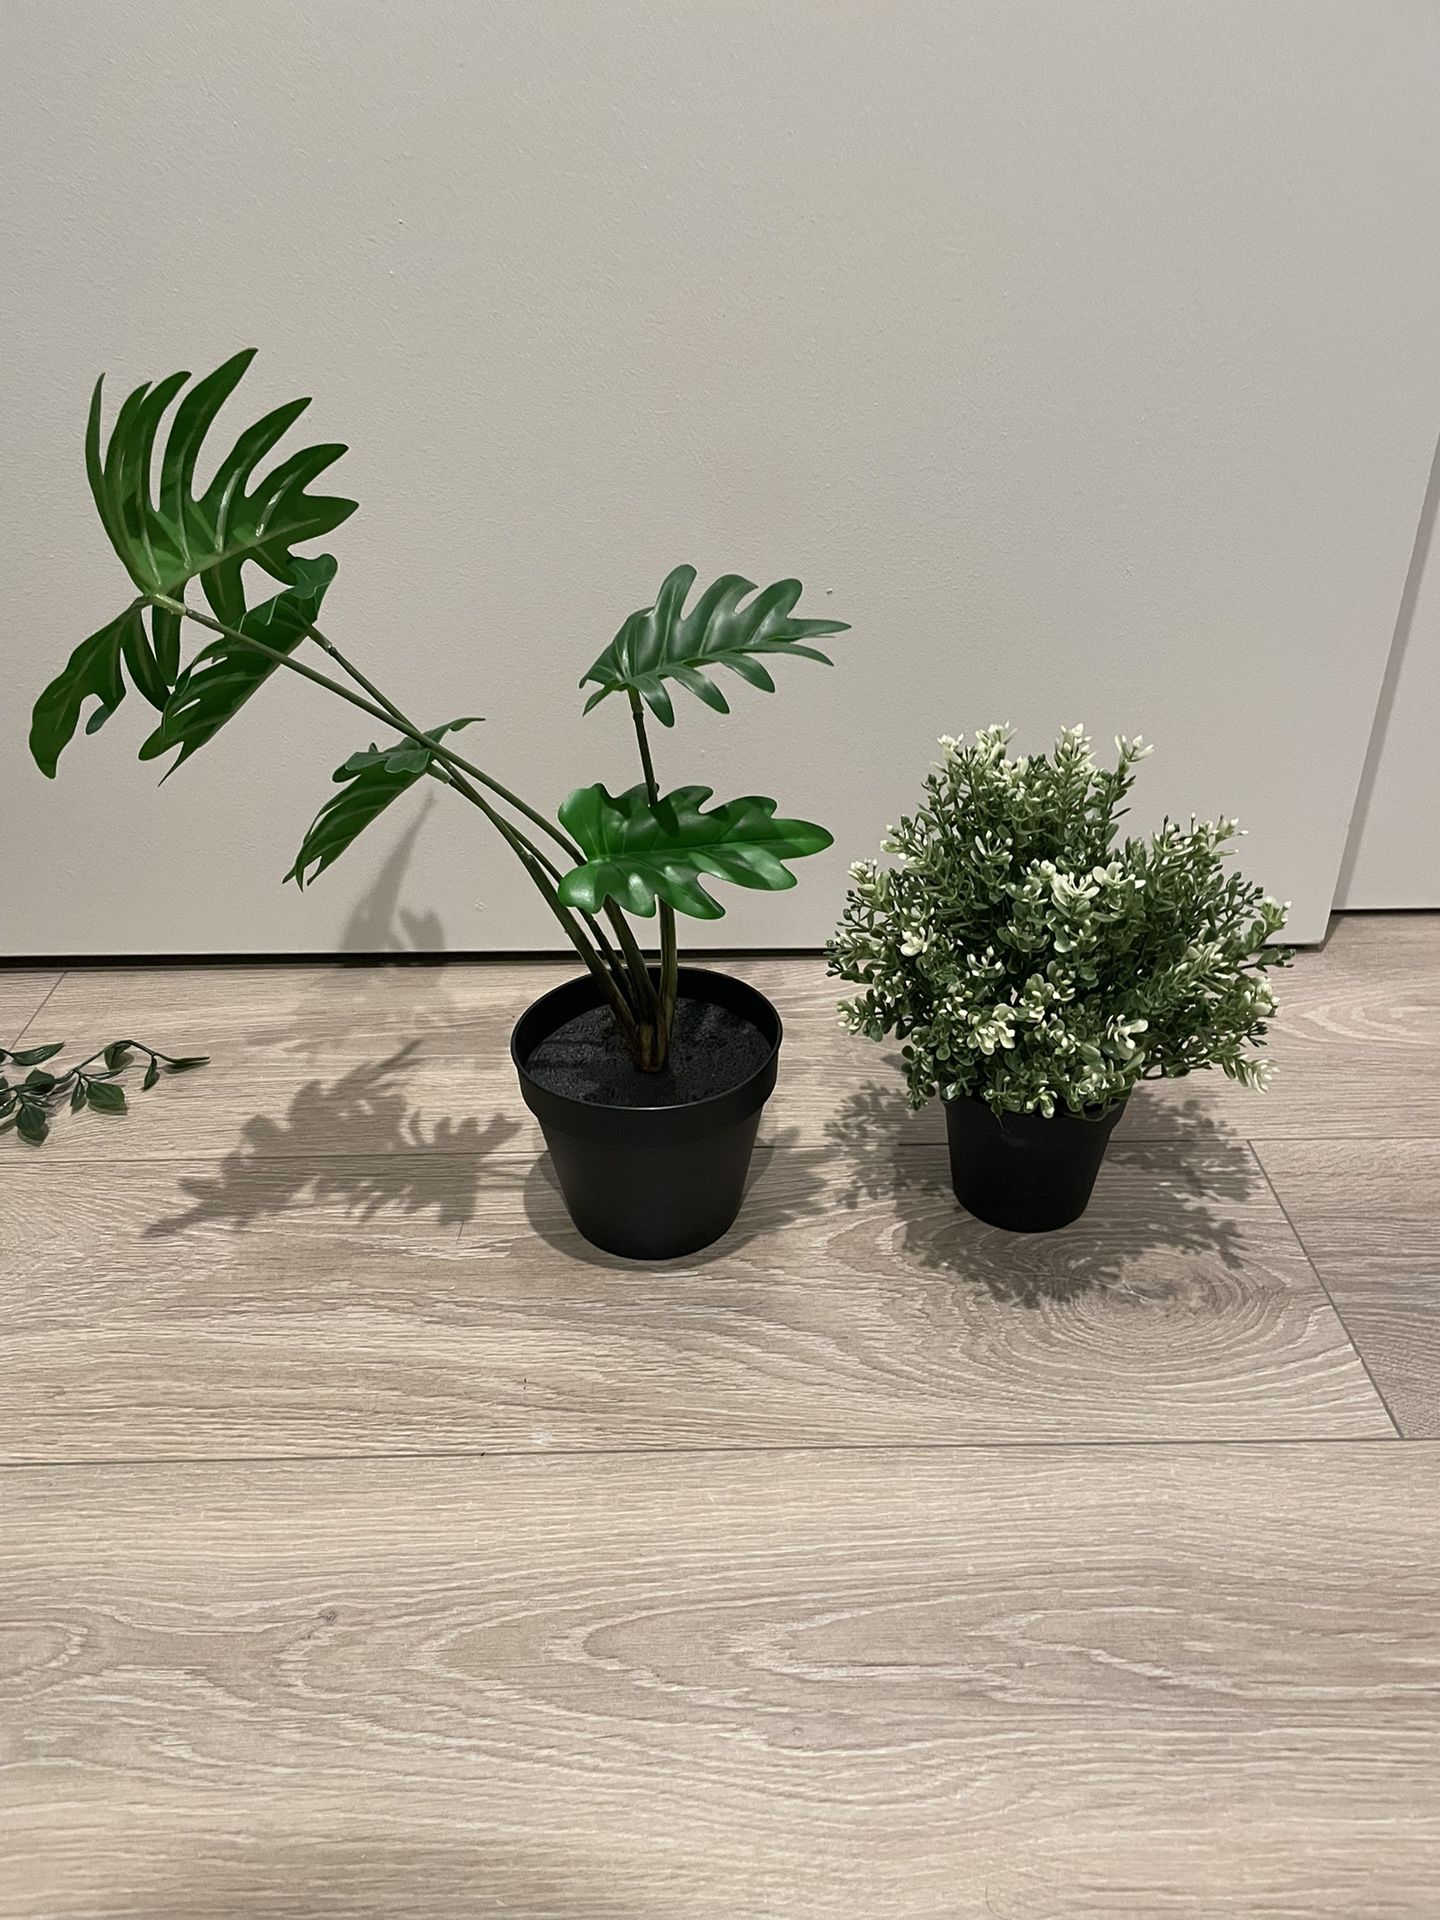 Decorative pot plants 